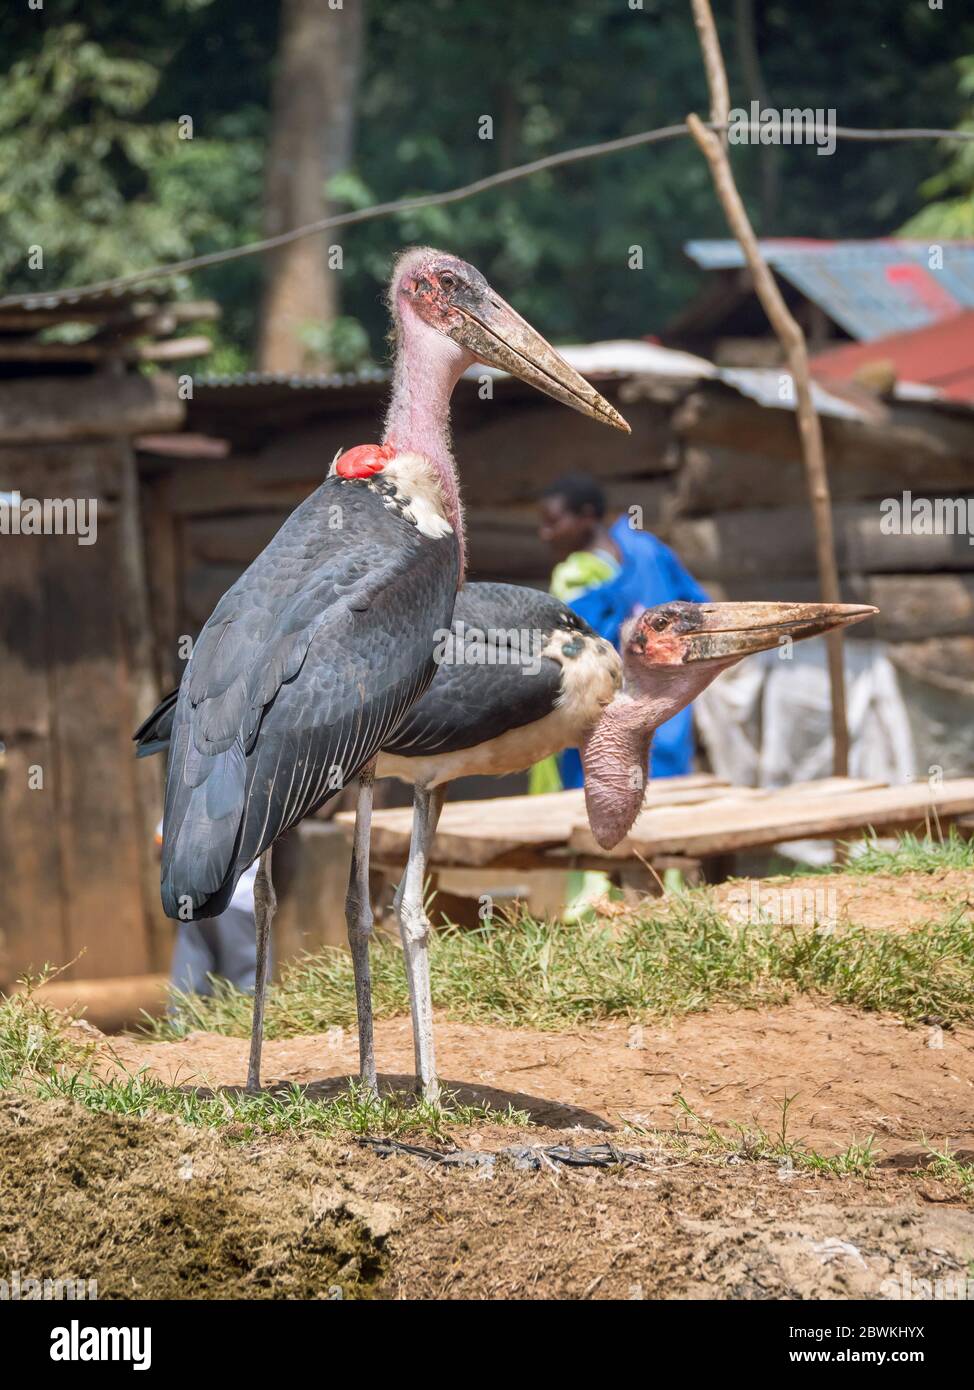 Marabou stork (Leptoptilos crumeniferus), de pie en las afueras de una aldea rural, Uganda Foto de stock